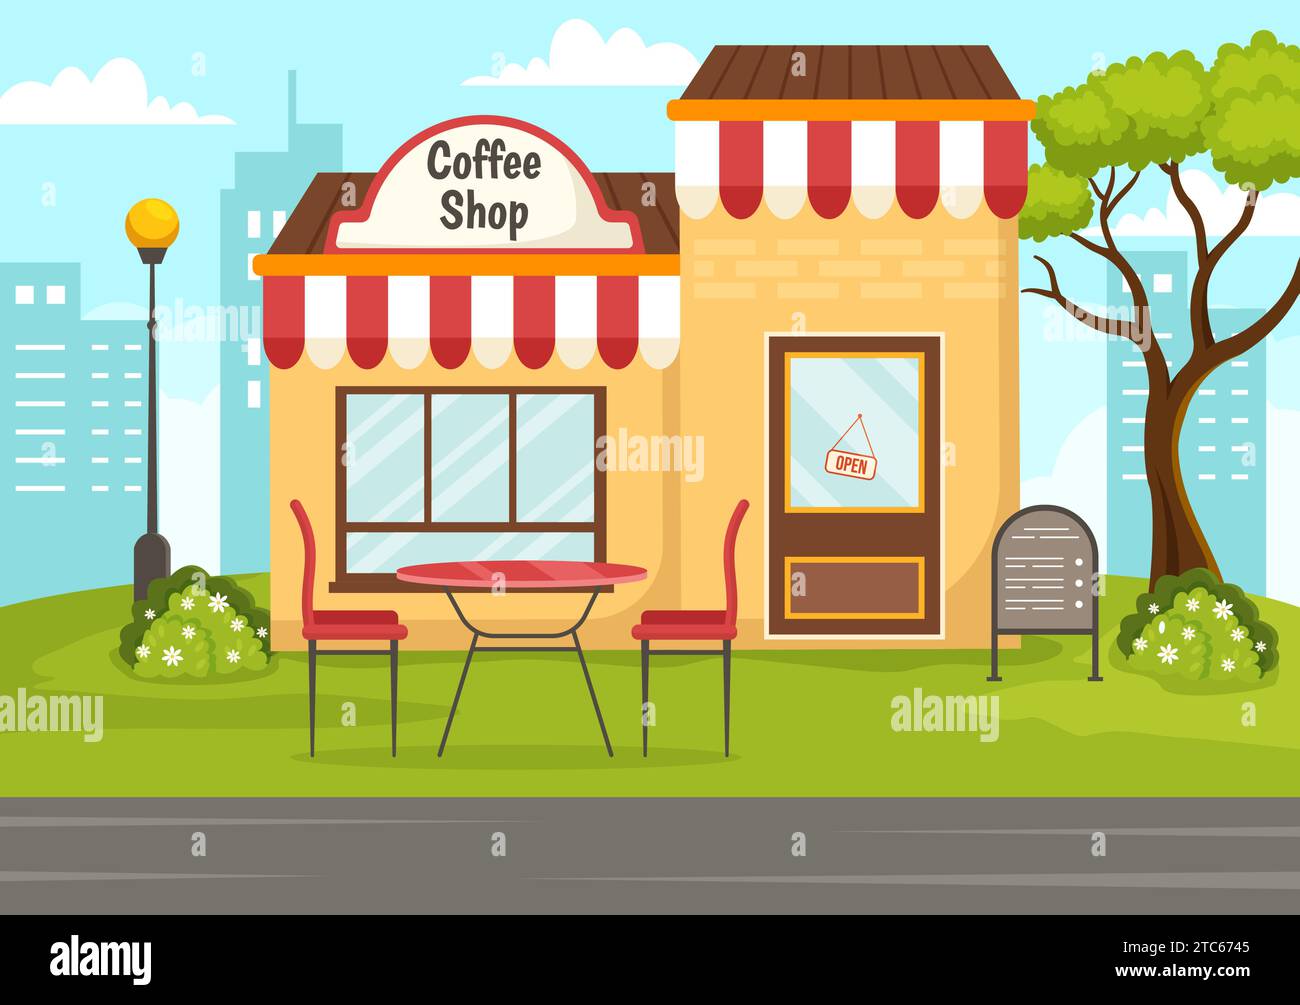 Coffee Shop Vektor-Illustration mit Innenraum und Möbeln passend für Poster oder Werbung im flachen Cartoon Hintergrund Design Stock Vektor